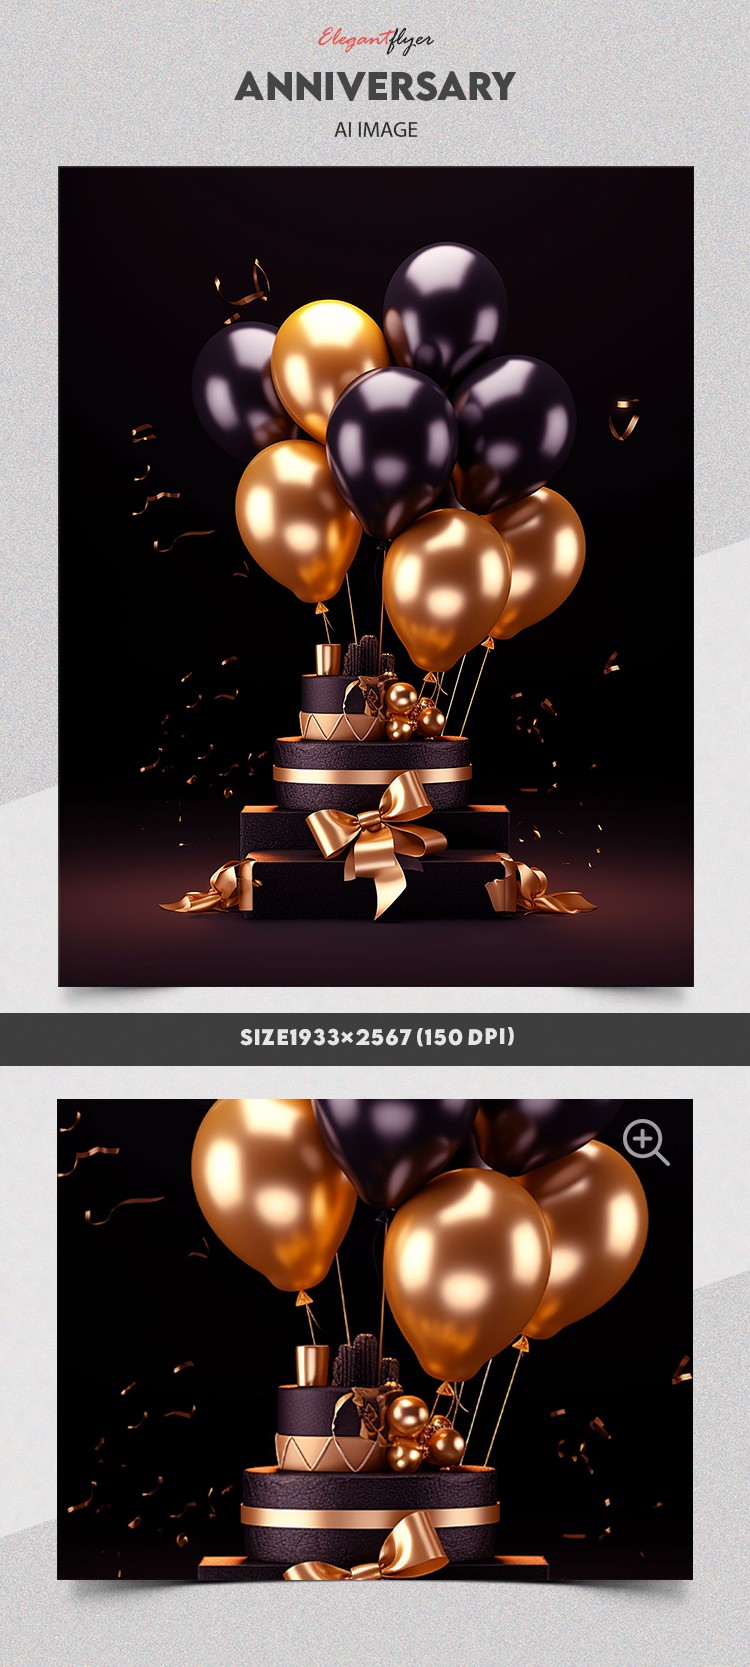 Luksusowe rocznice z balonami by ElegantFlyer